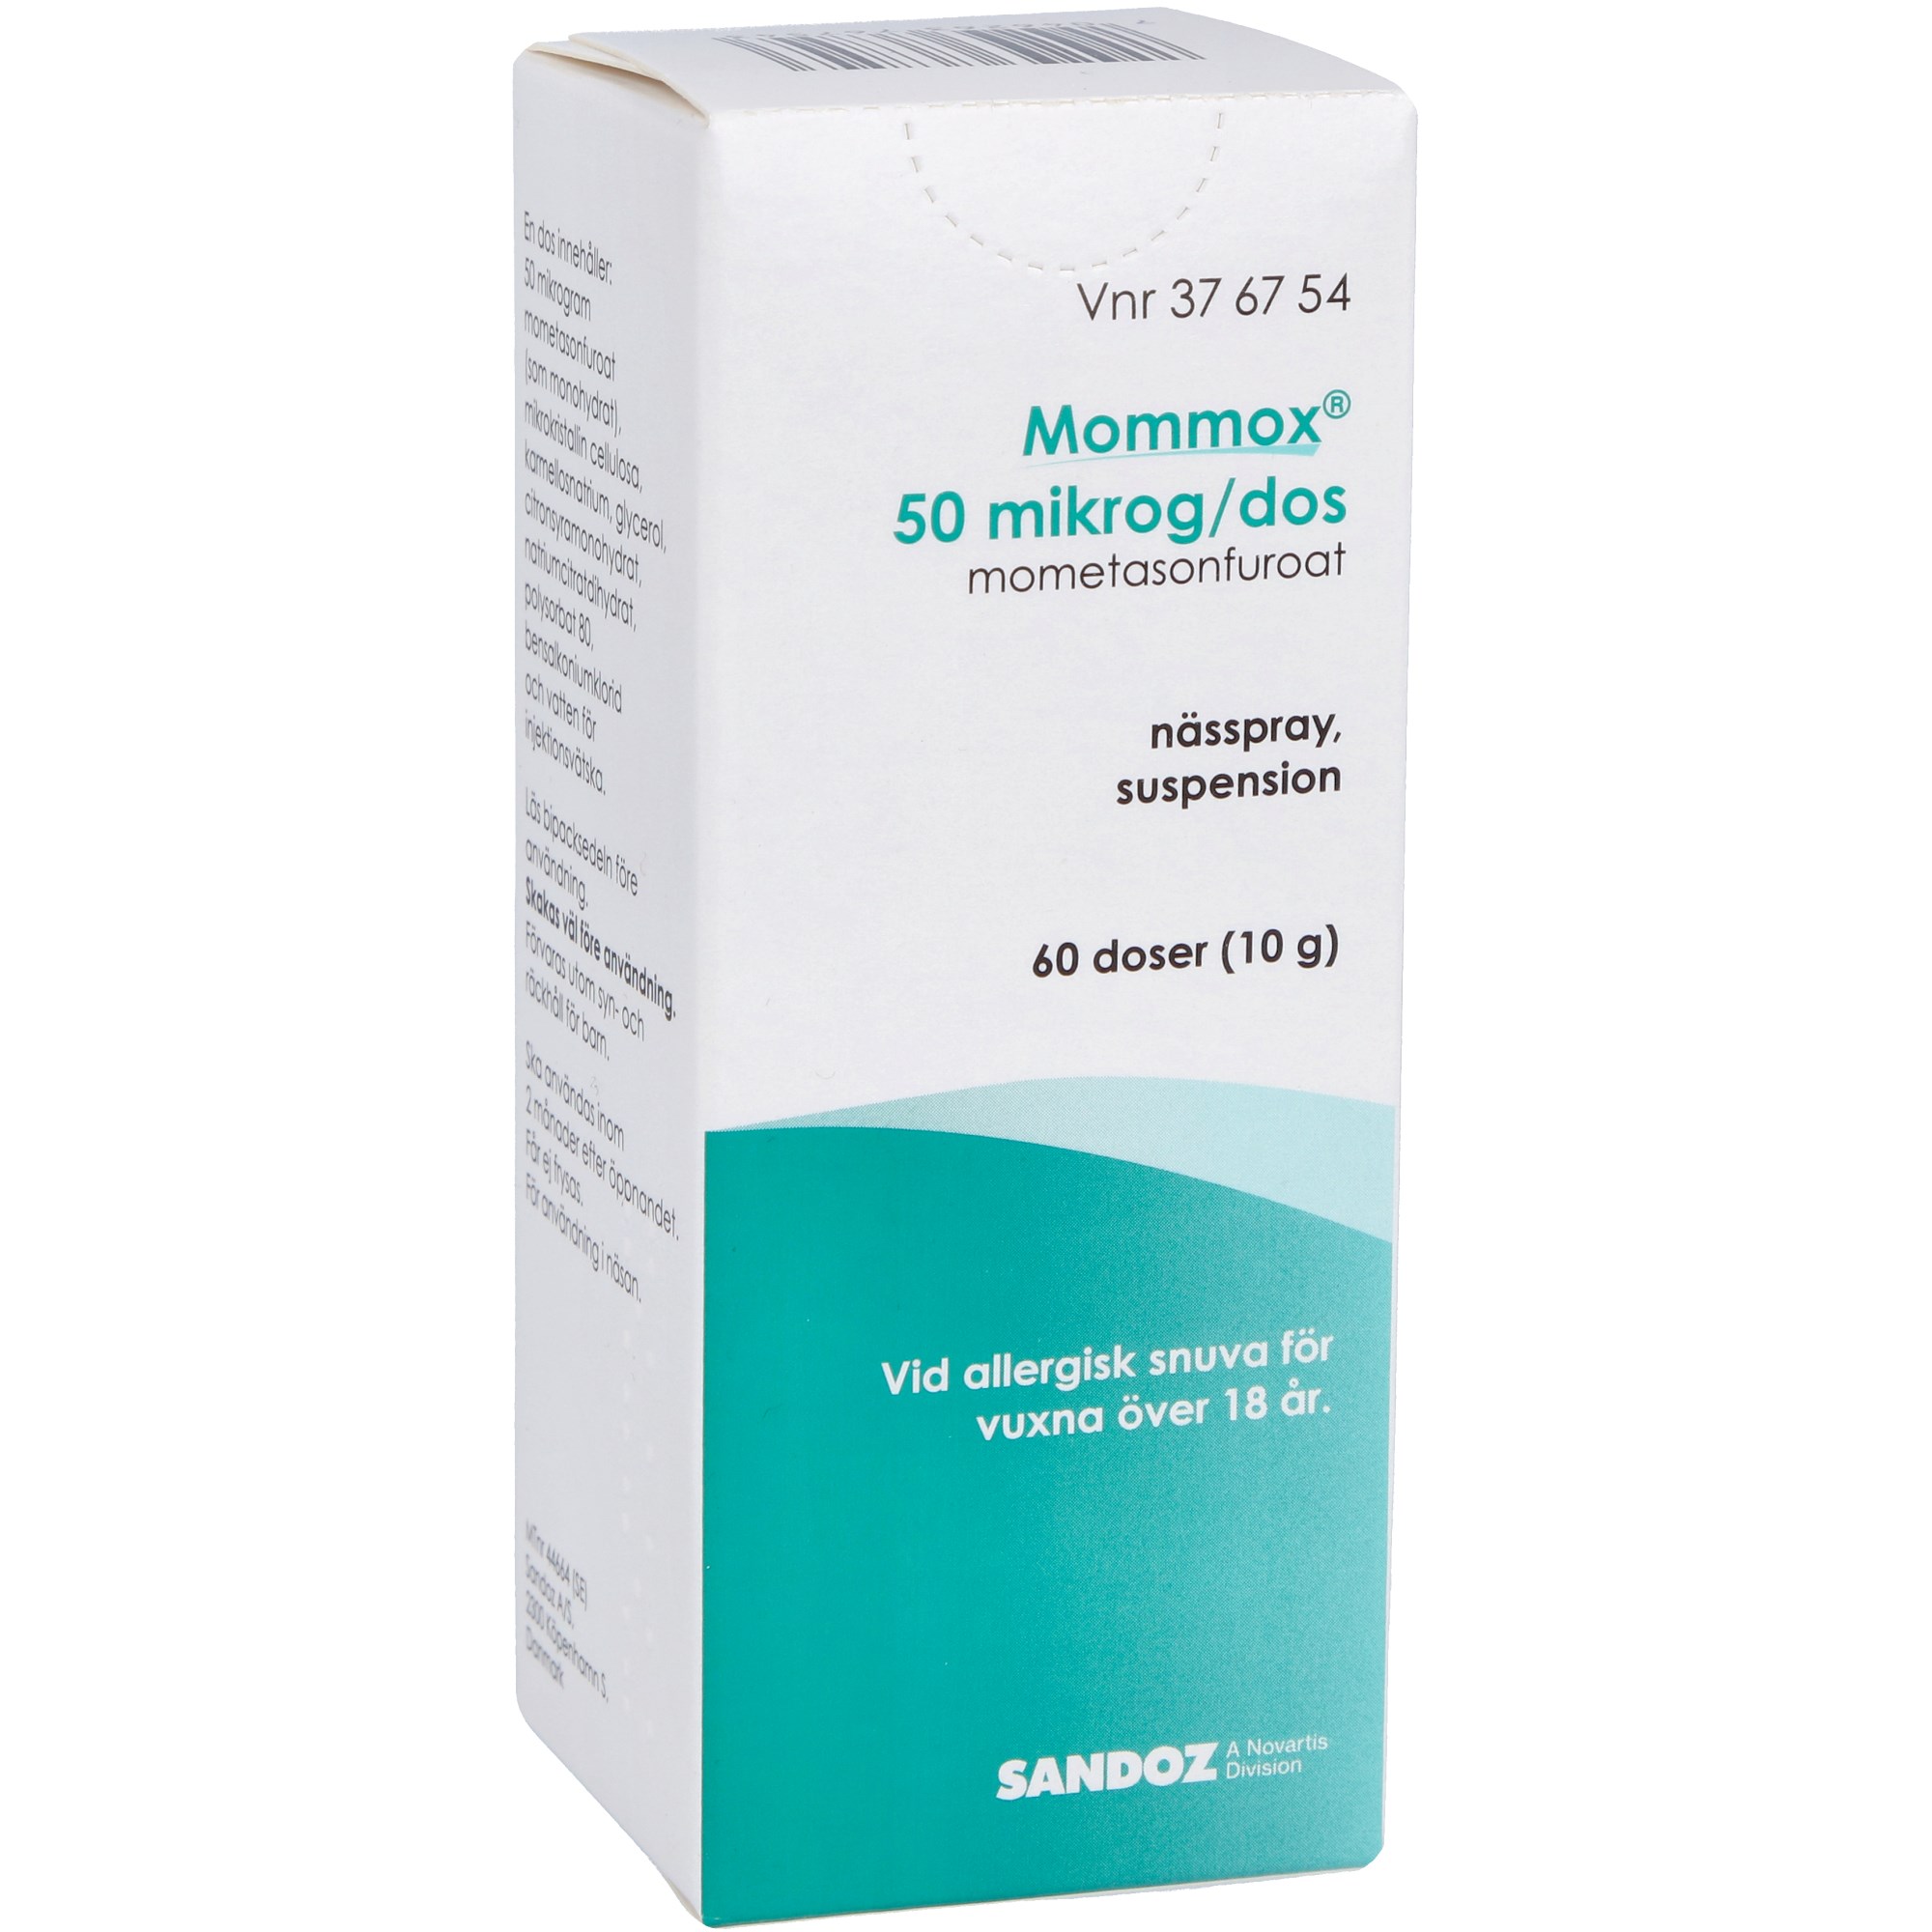 Mommox Nässpray 50mg/dos 60 doser